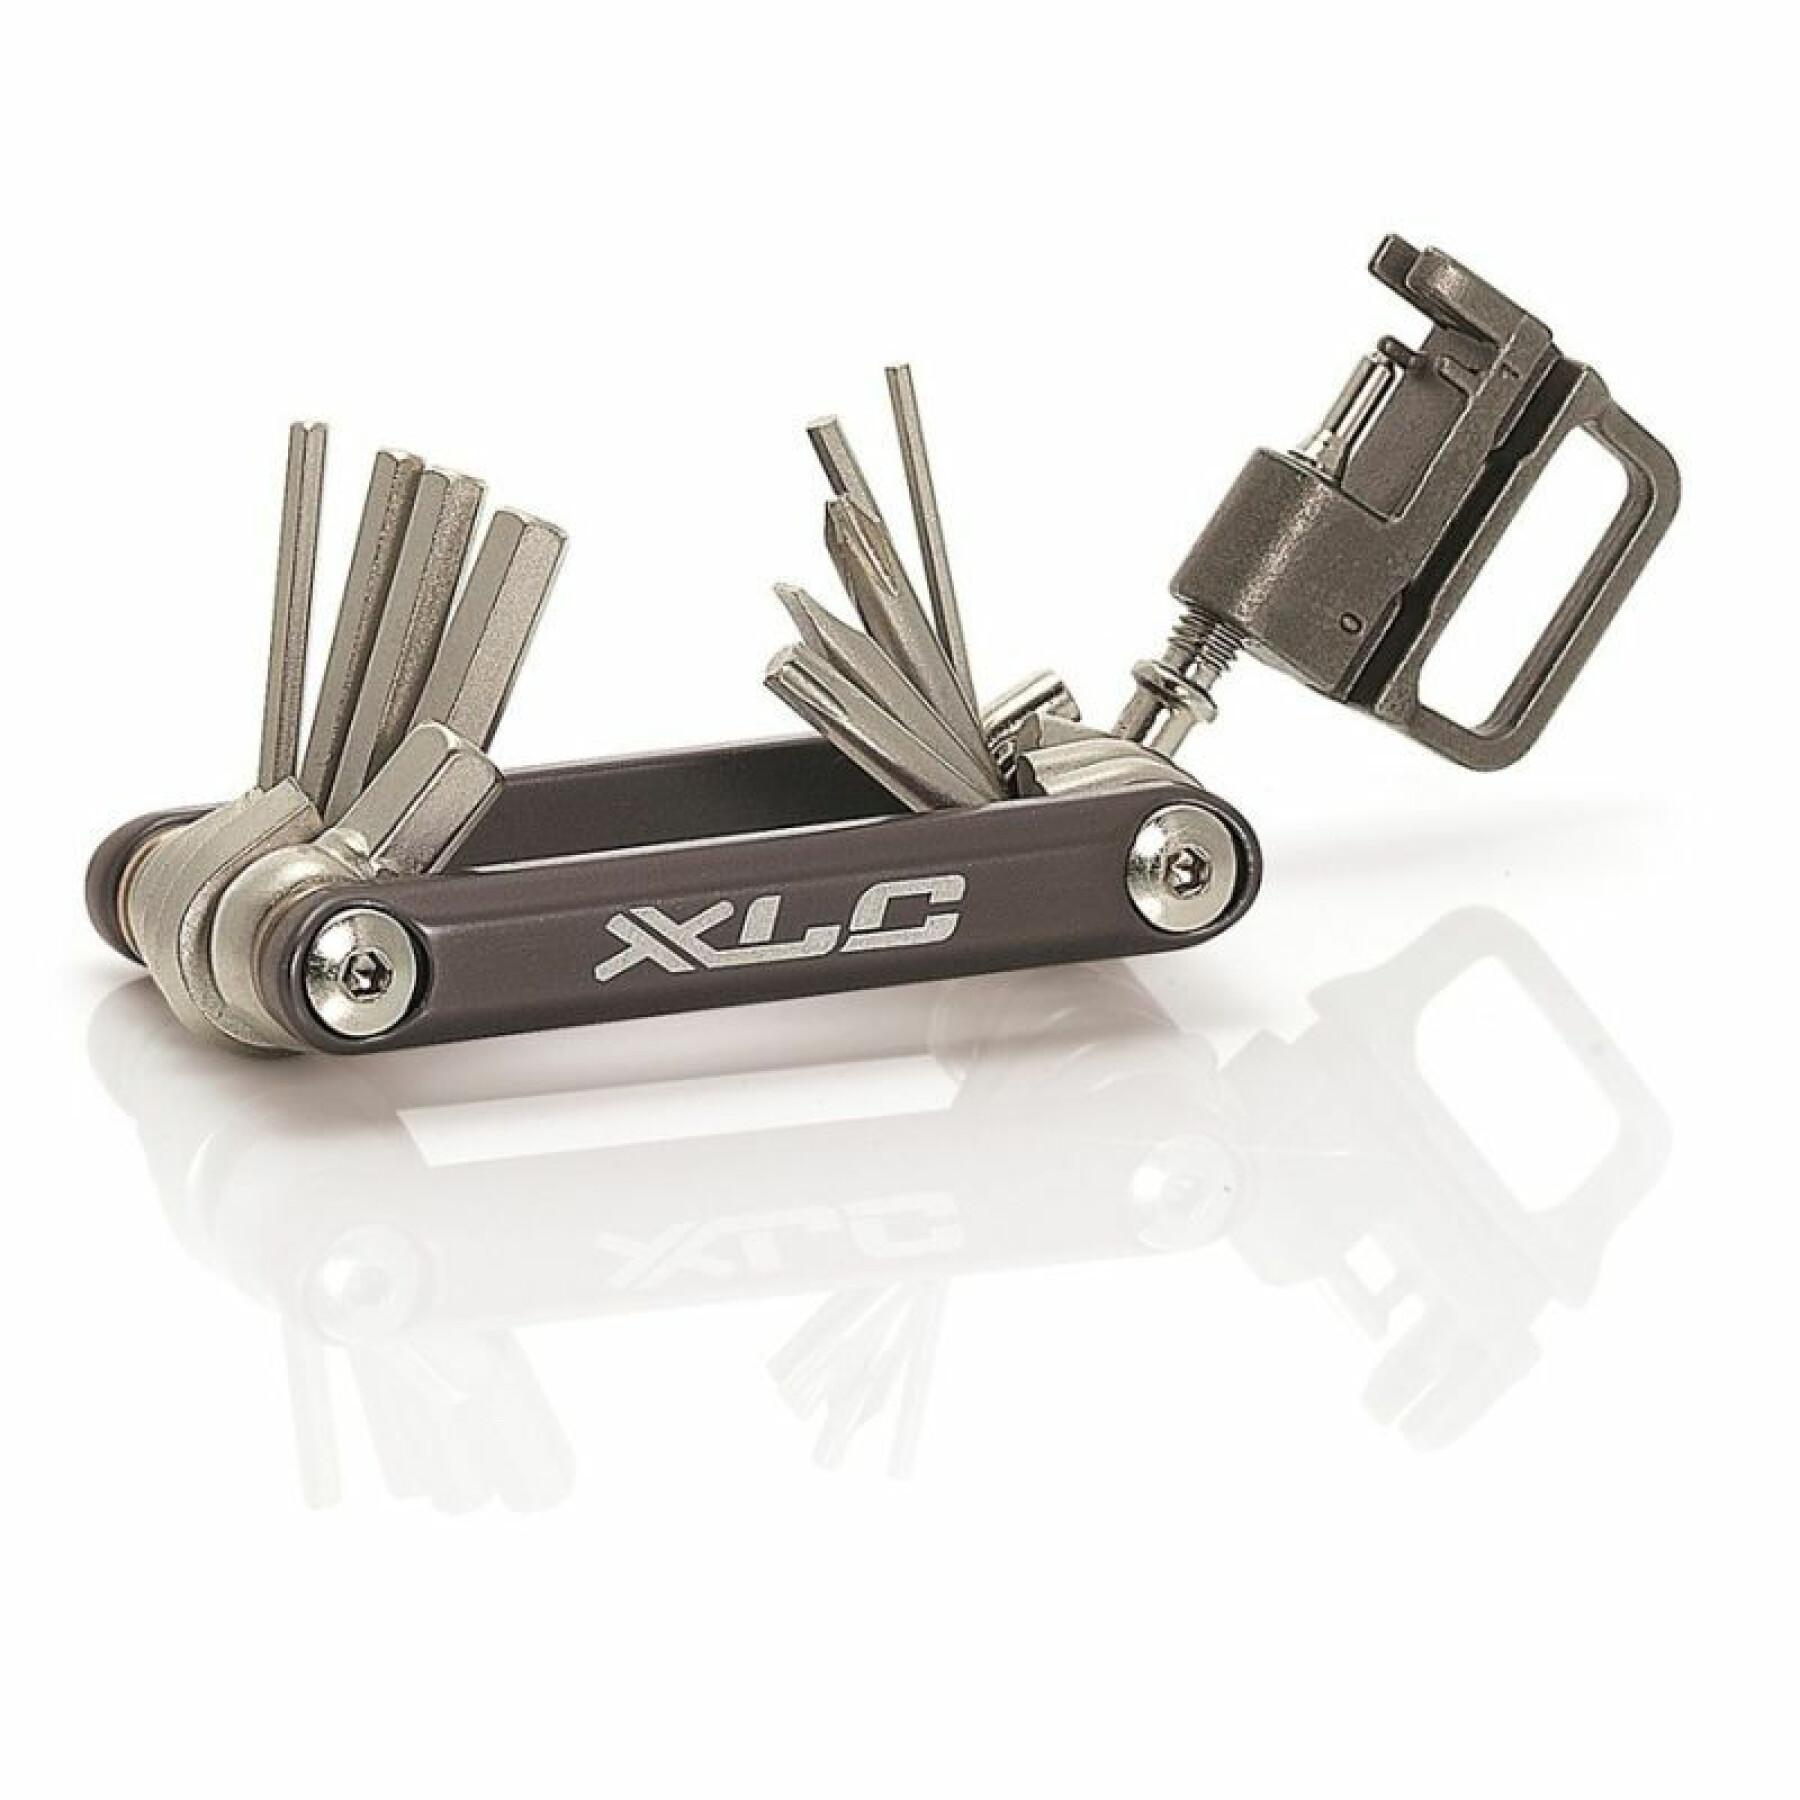 Multifunktionellt nyckelverktyg med 15 insex- och kedjedrivfunktioner XLC TO-M07 Torx T25